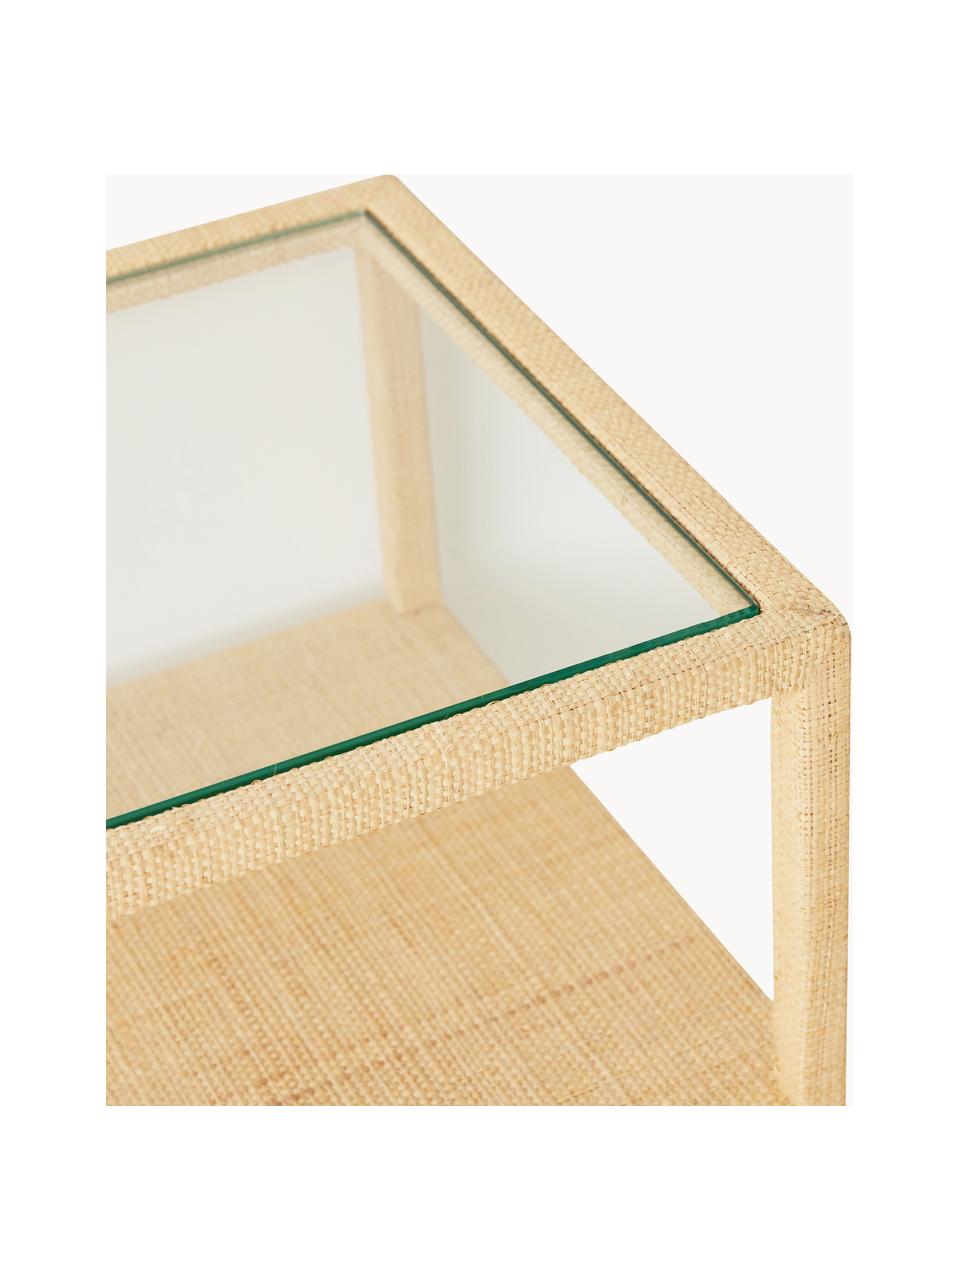 Console artisanale avec plateau en verre Raffia, Beige clair, larg. 120 x prof. 78 cm